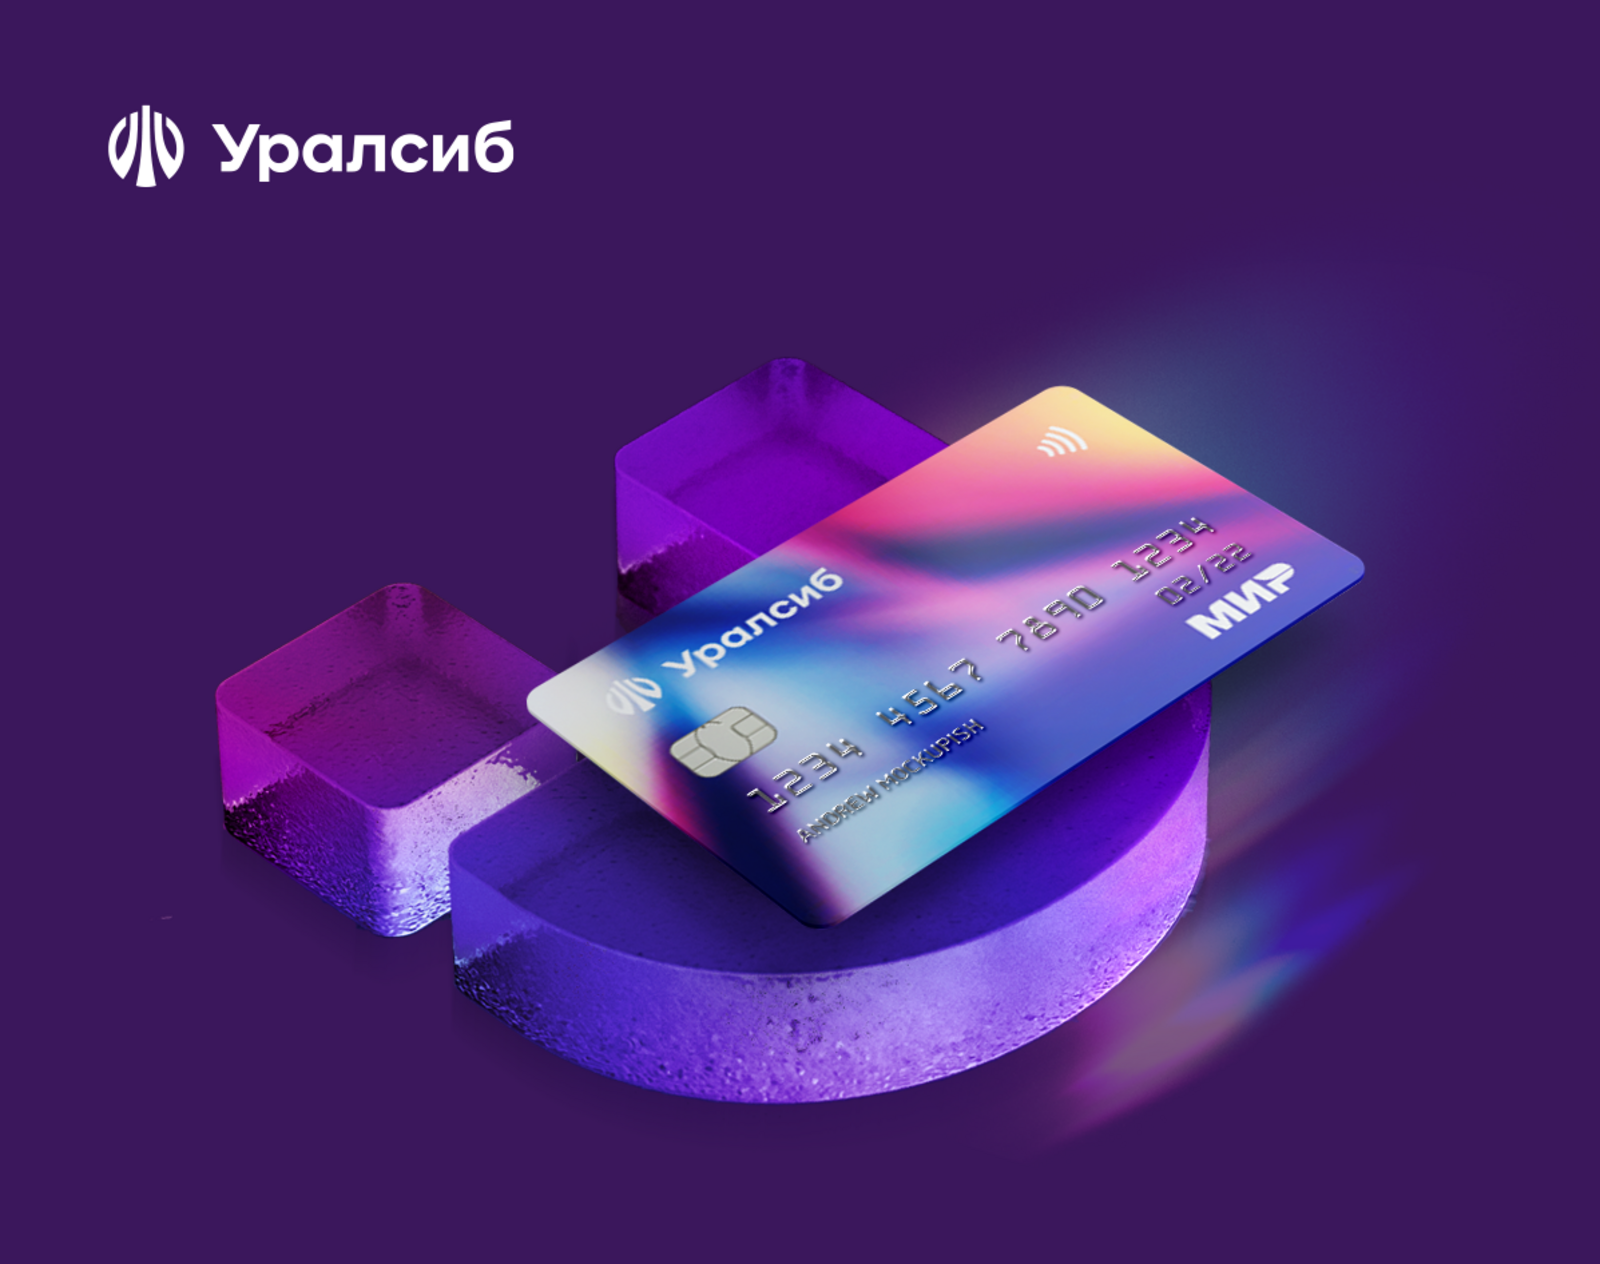 Банк Уралсиб вошел в Топ-10 рейтинга лучших кредитных карт с большим льготным периодом